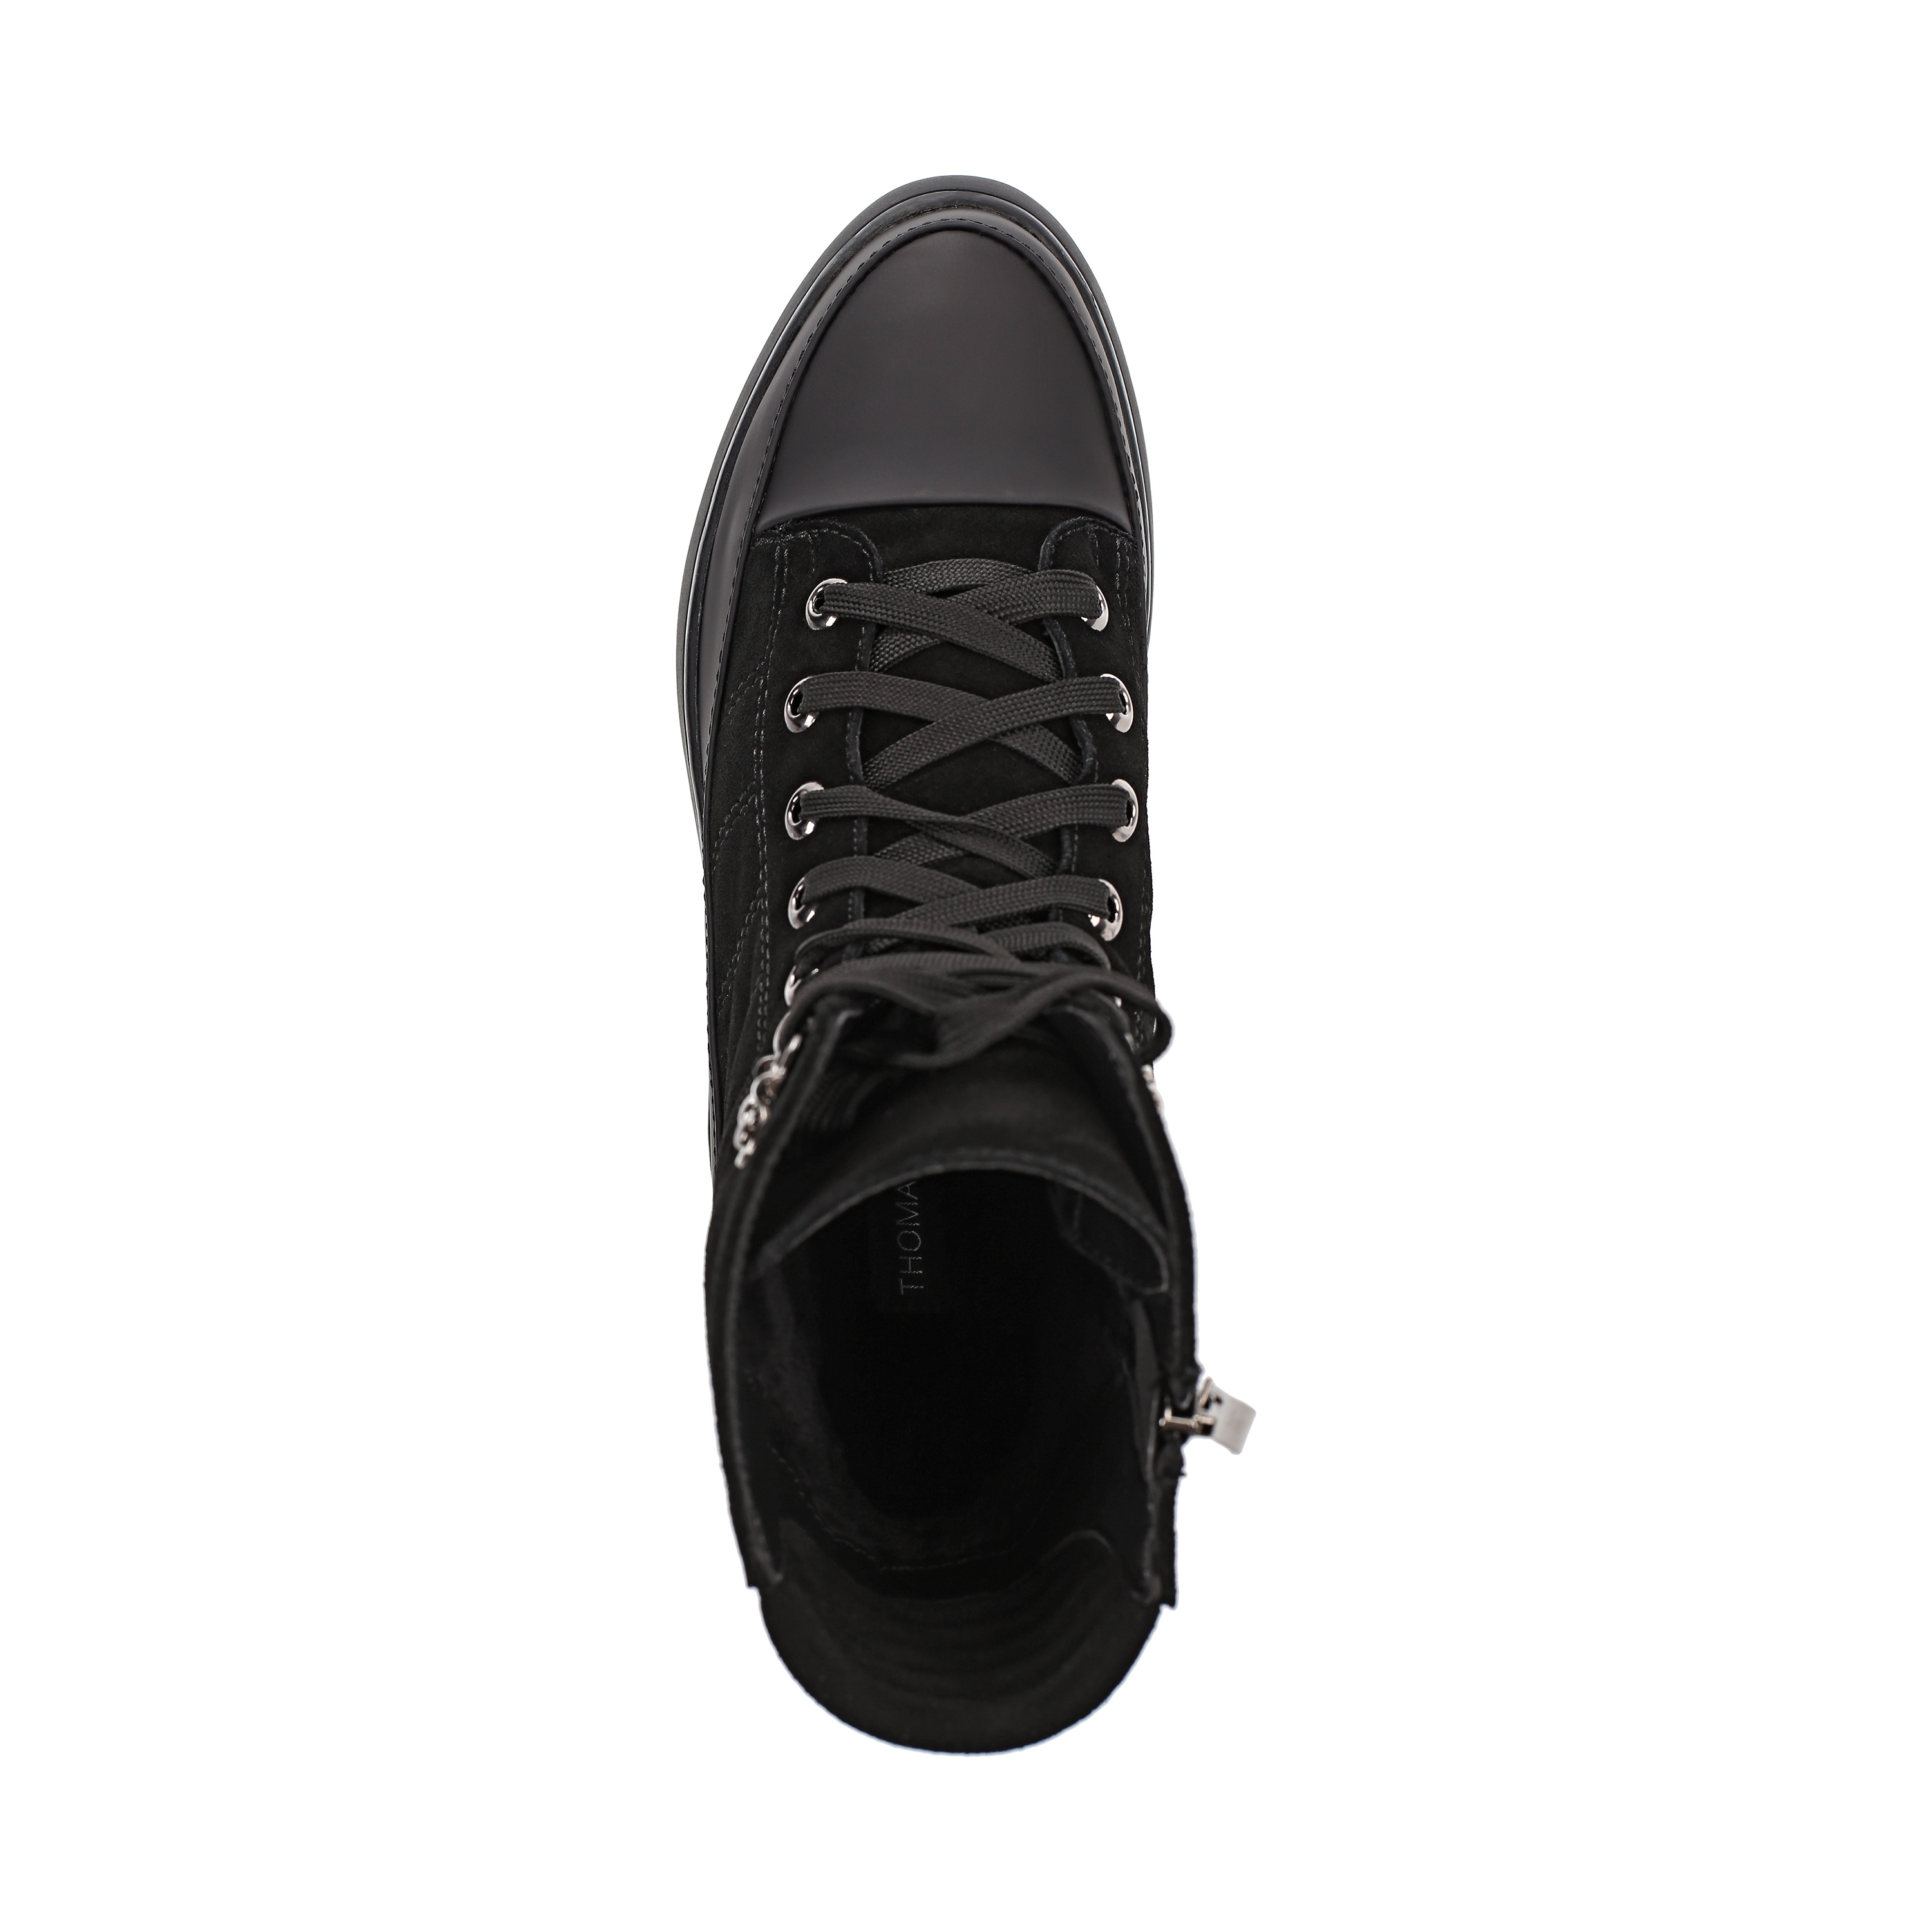 Ботинки Thomas Munz 233-584A-30202 233-584A-30202, цвет черный, размер 40 ботинки актив - фото 5